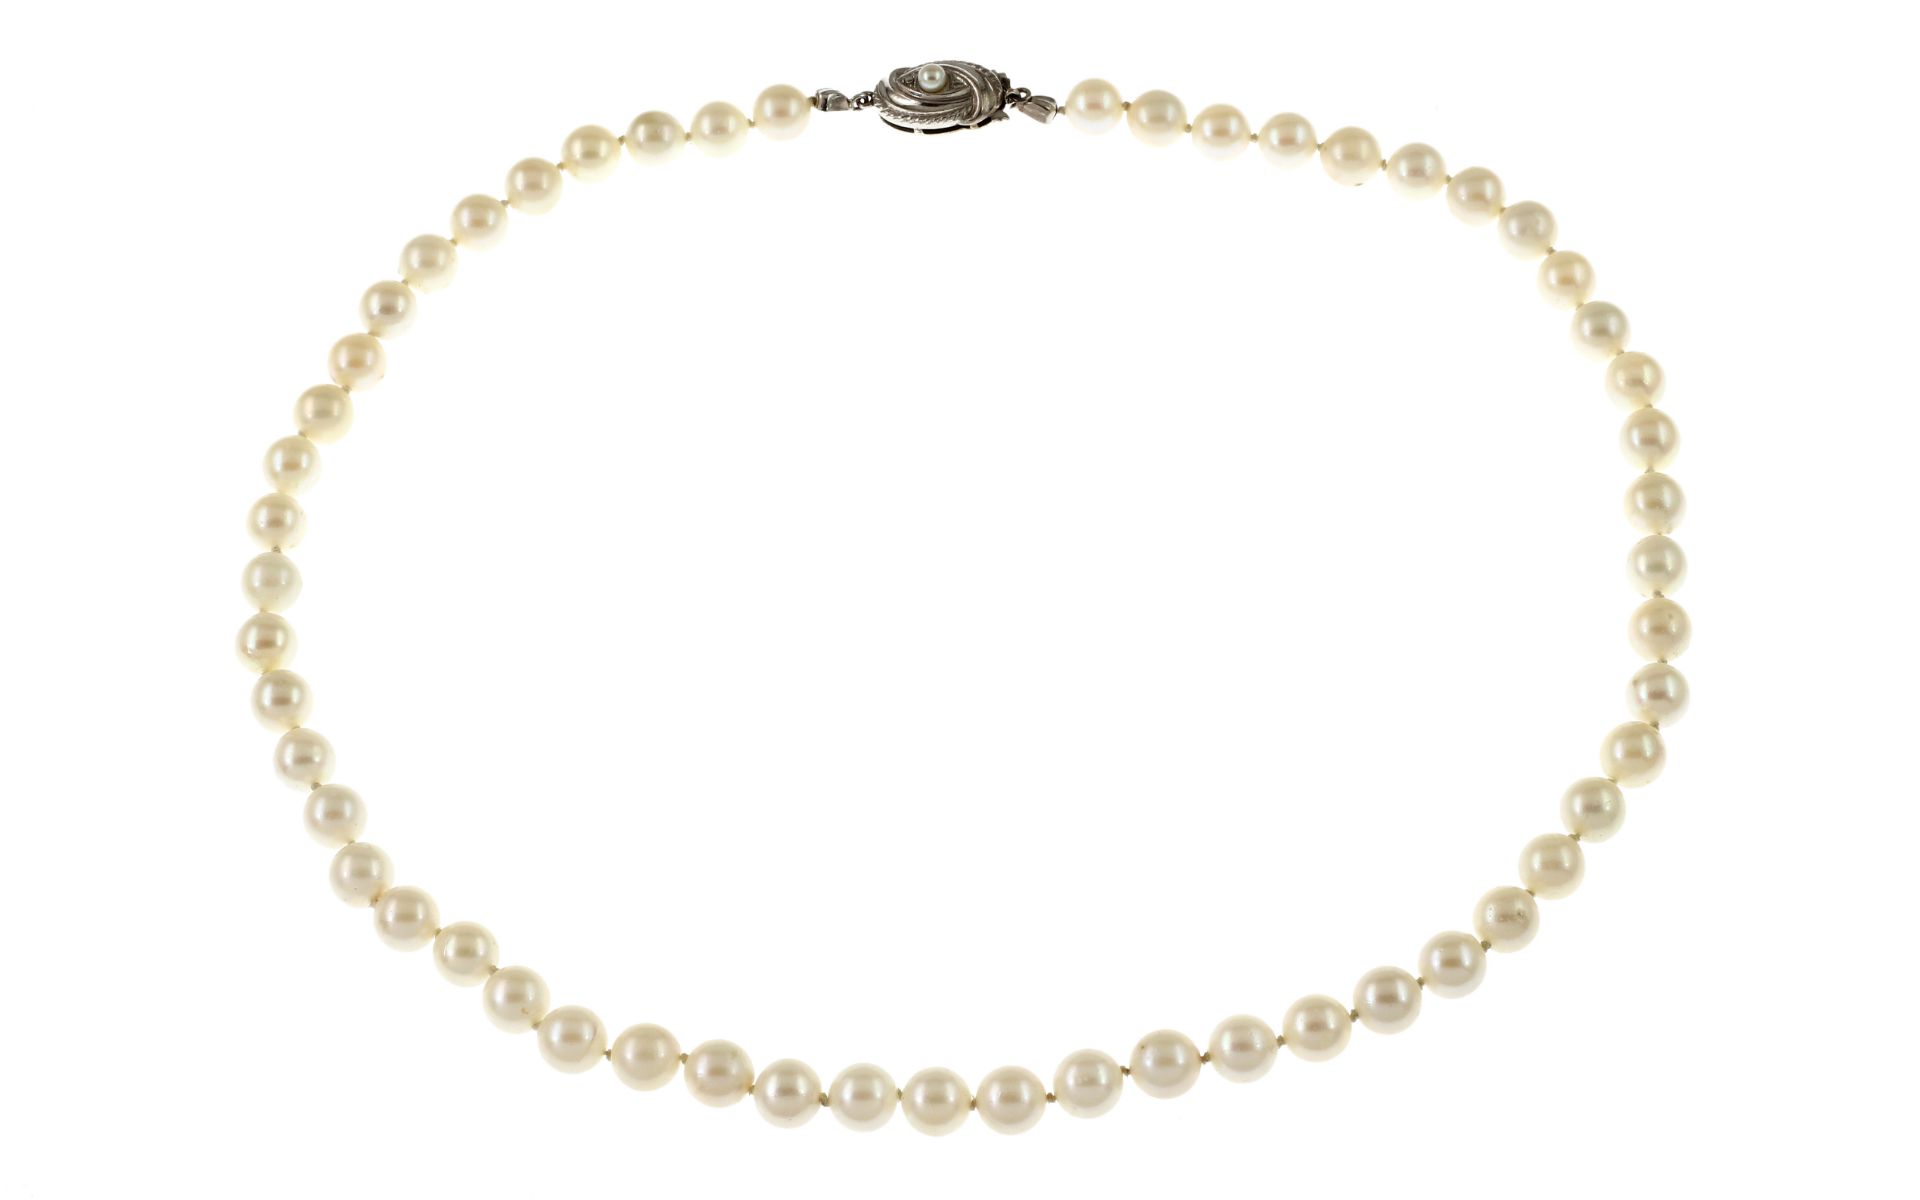 Perlenkette 31.38g mit Verschluss 585/- Gelbgold und Weissgold. Laenge ca. 45 cm